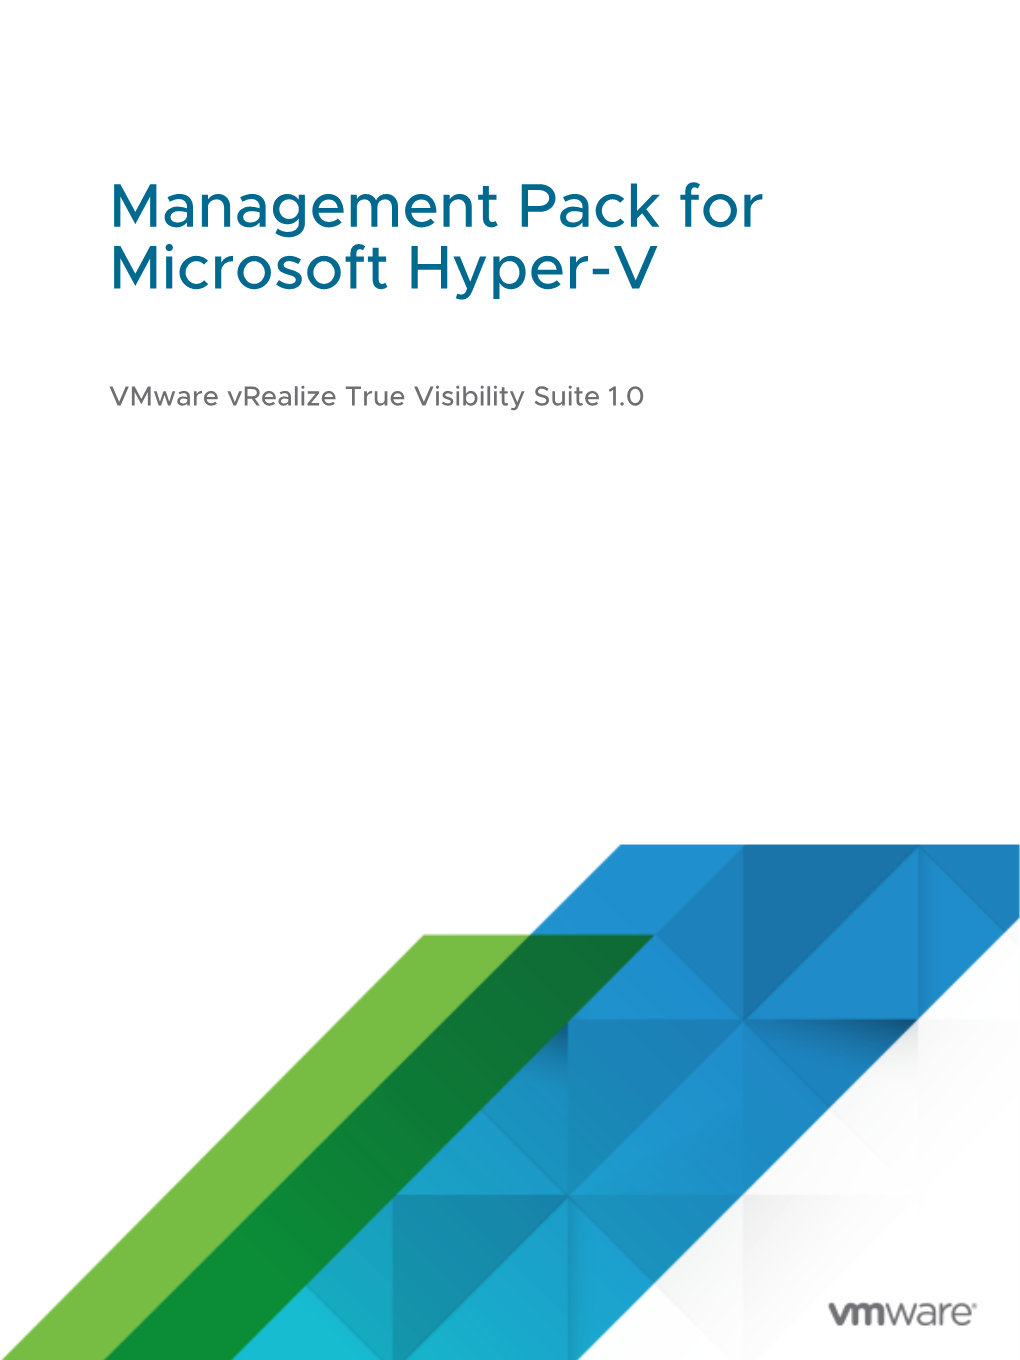 Management Pack for Microsoft Hyper-V